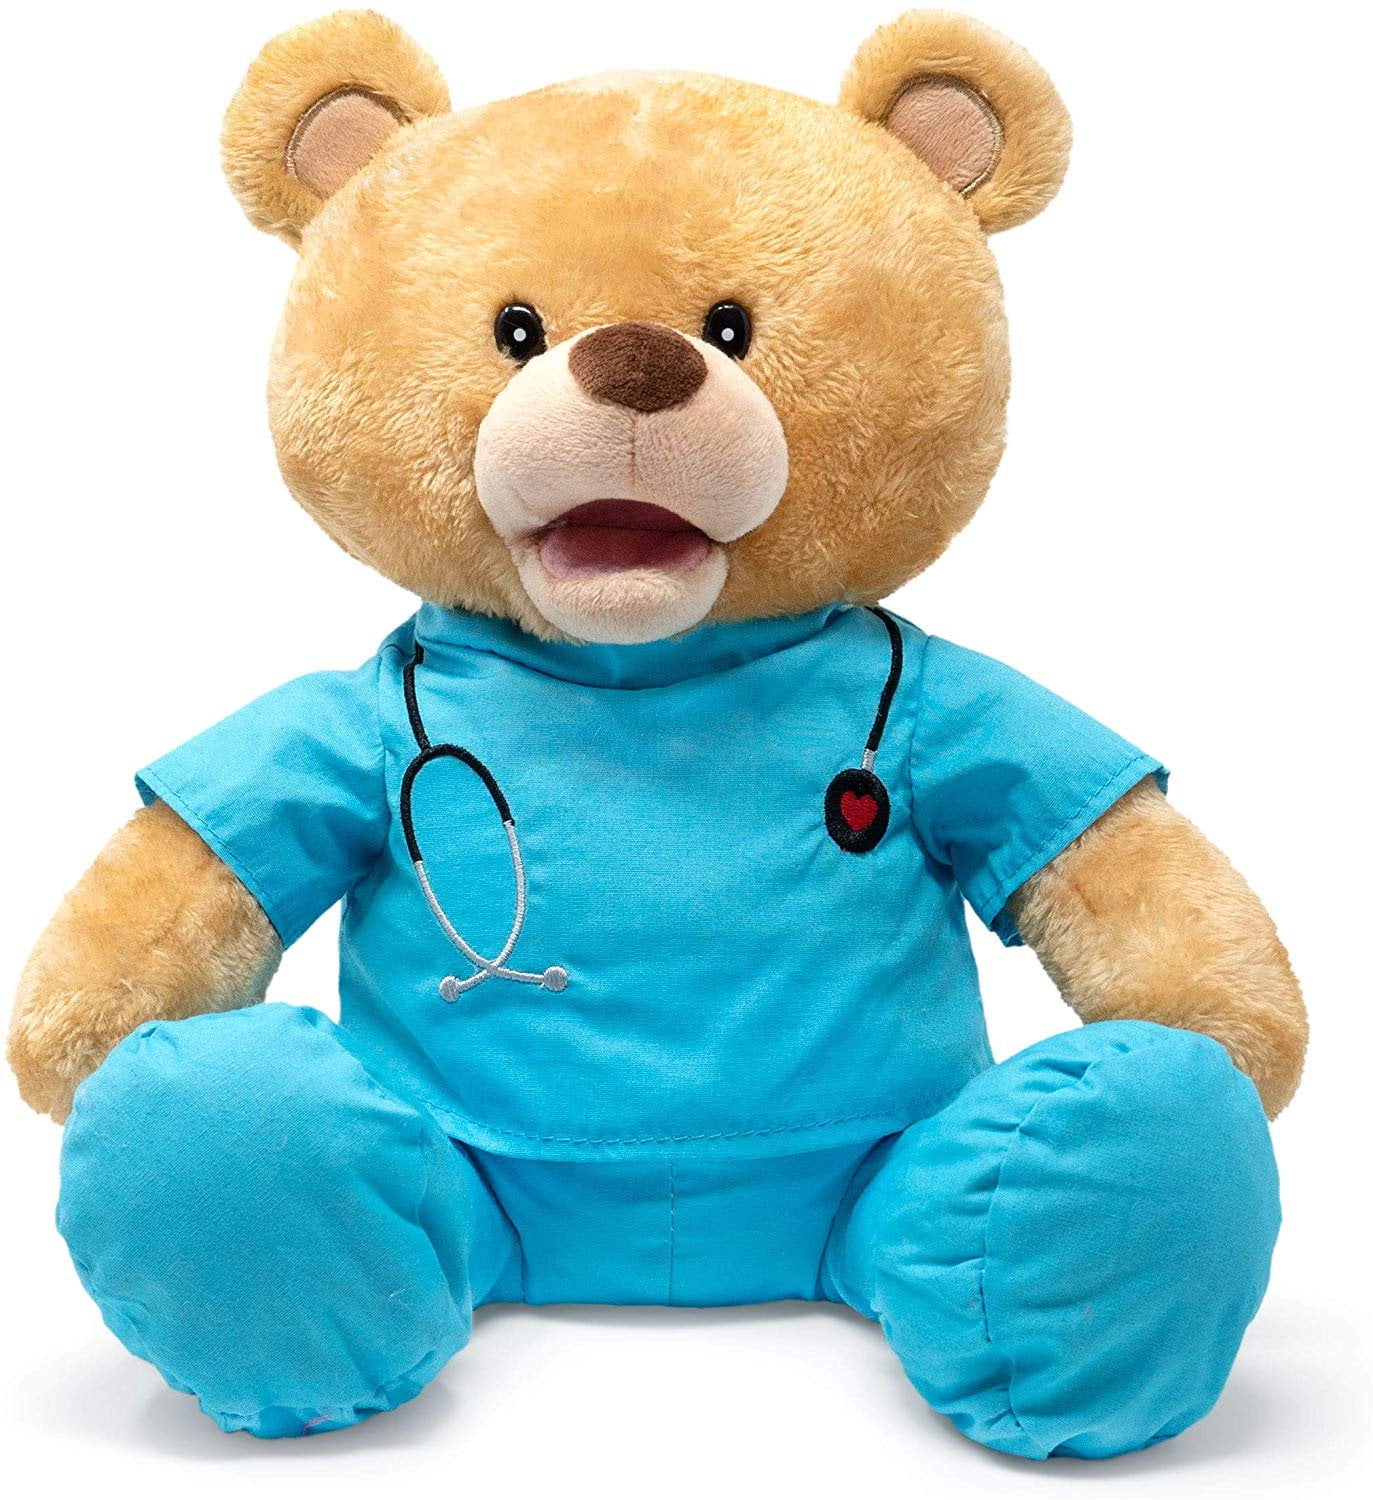 Cuddle Barn Feel Good Glenn 10 Bear Animated Stuffed Animal Plush Toy Teddy Bear in Blue Scrubs Sings I Feel Good 